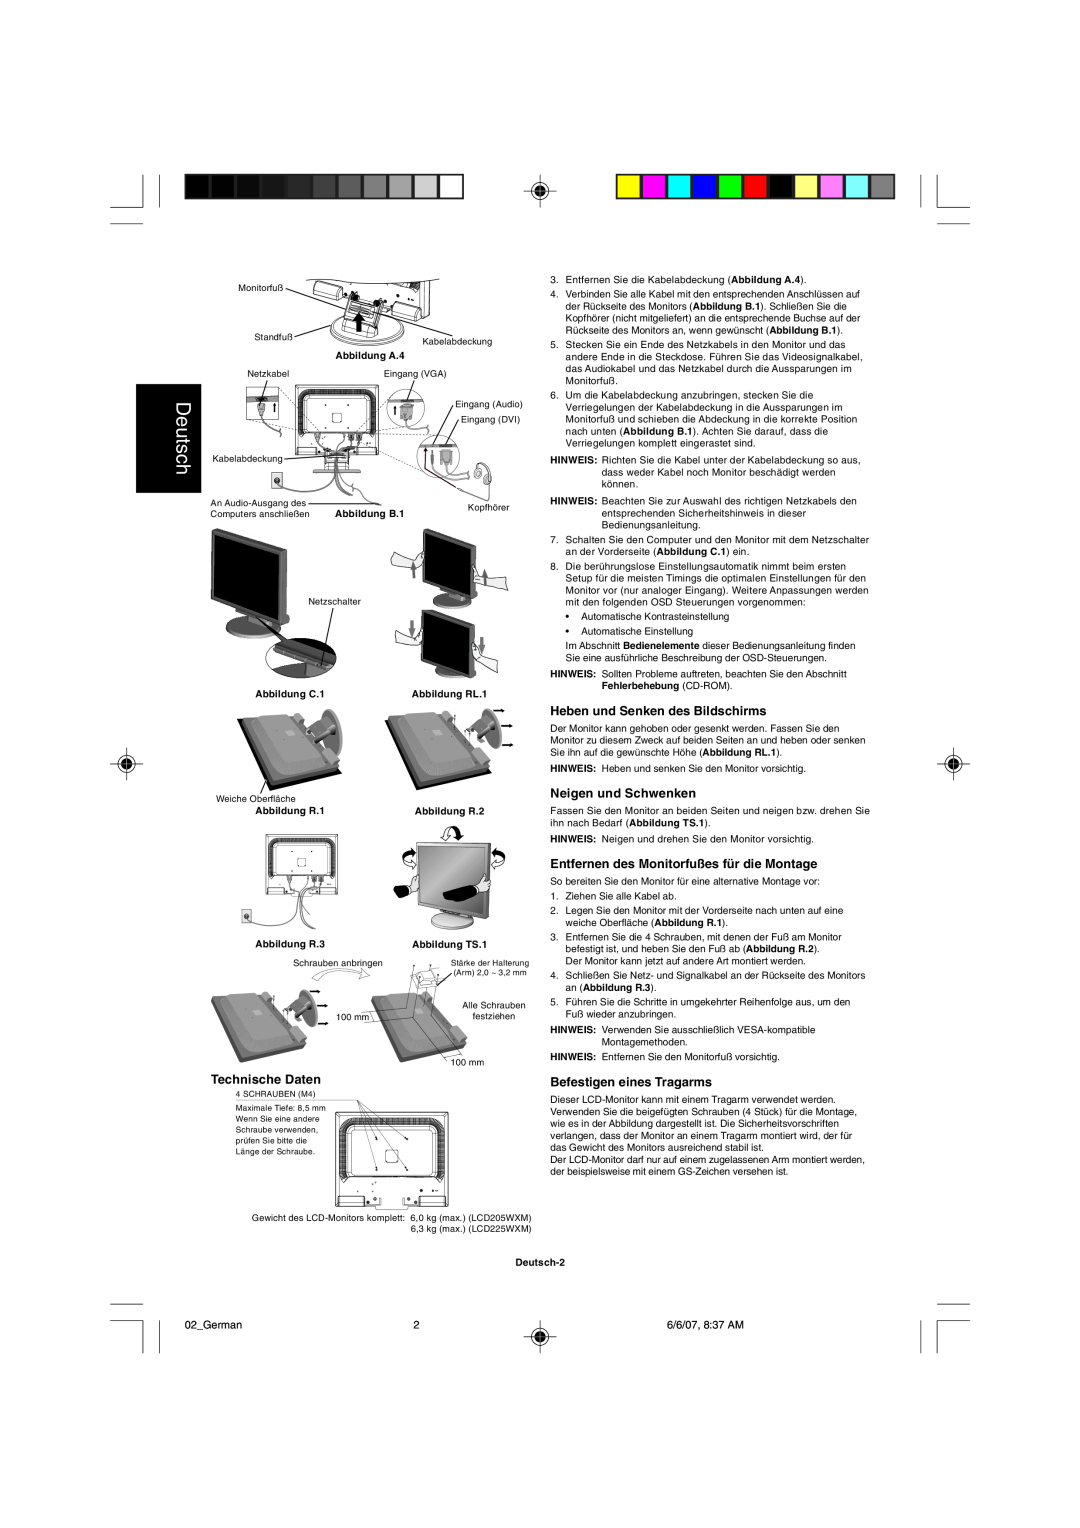 NEC LCD205WXM, LCD225WXM user manual Deutsch, Technische Daten, Heben und Senken des Bildschirms, Neigen und Schwenken 